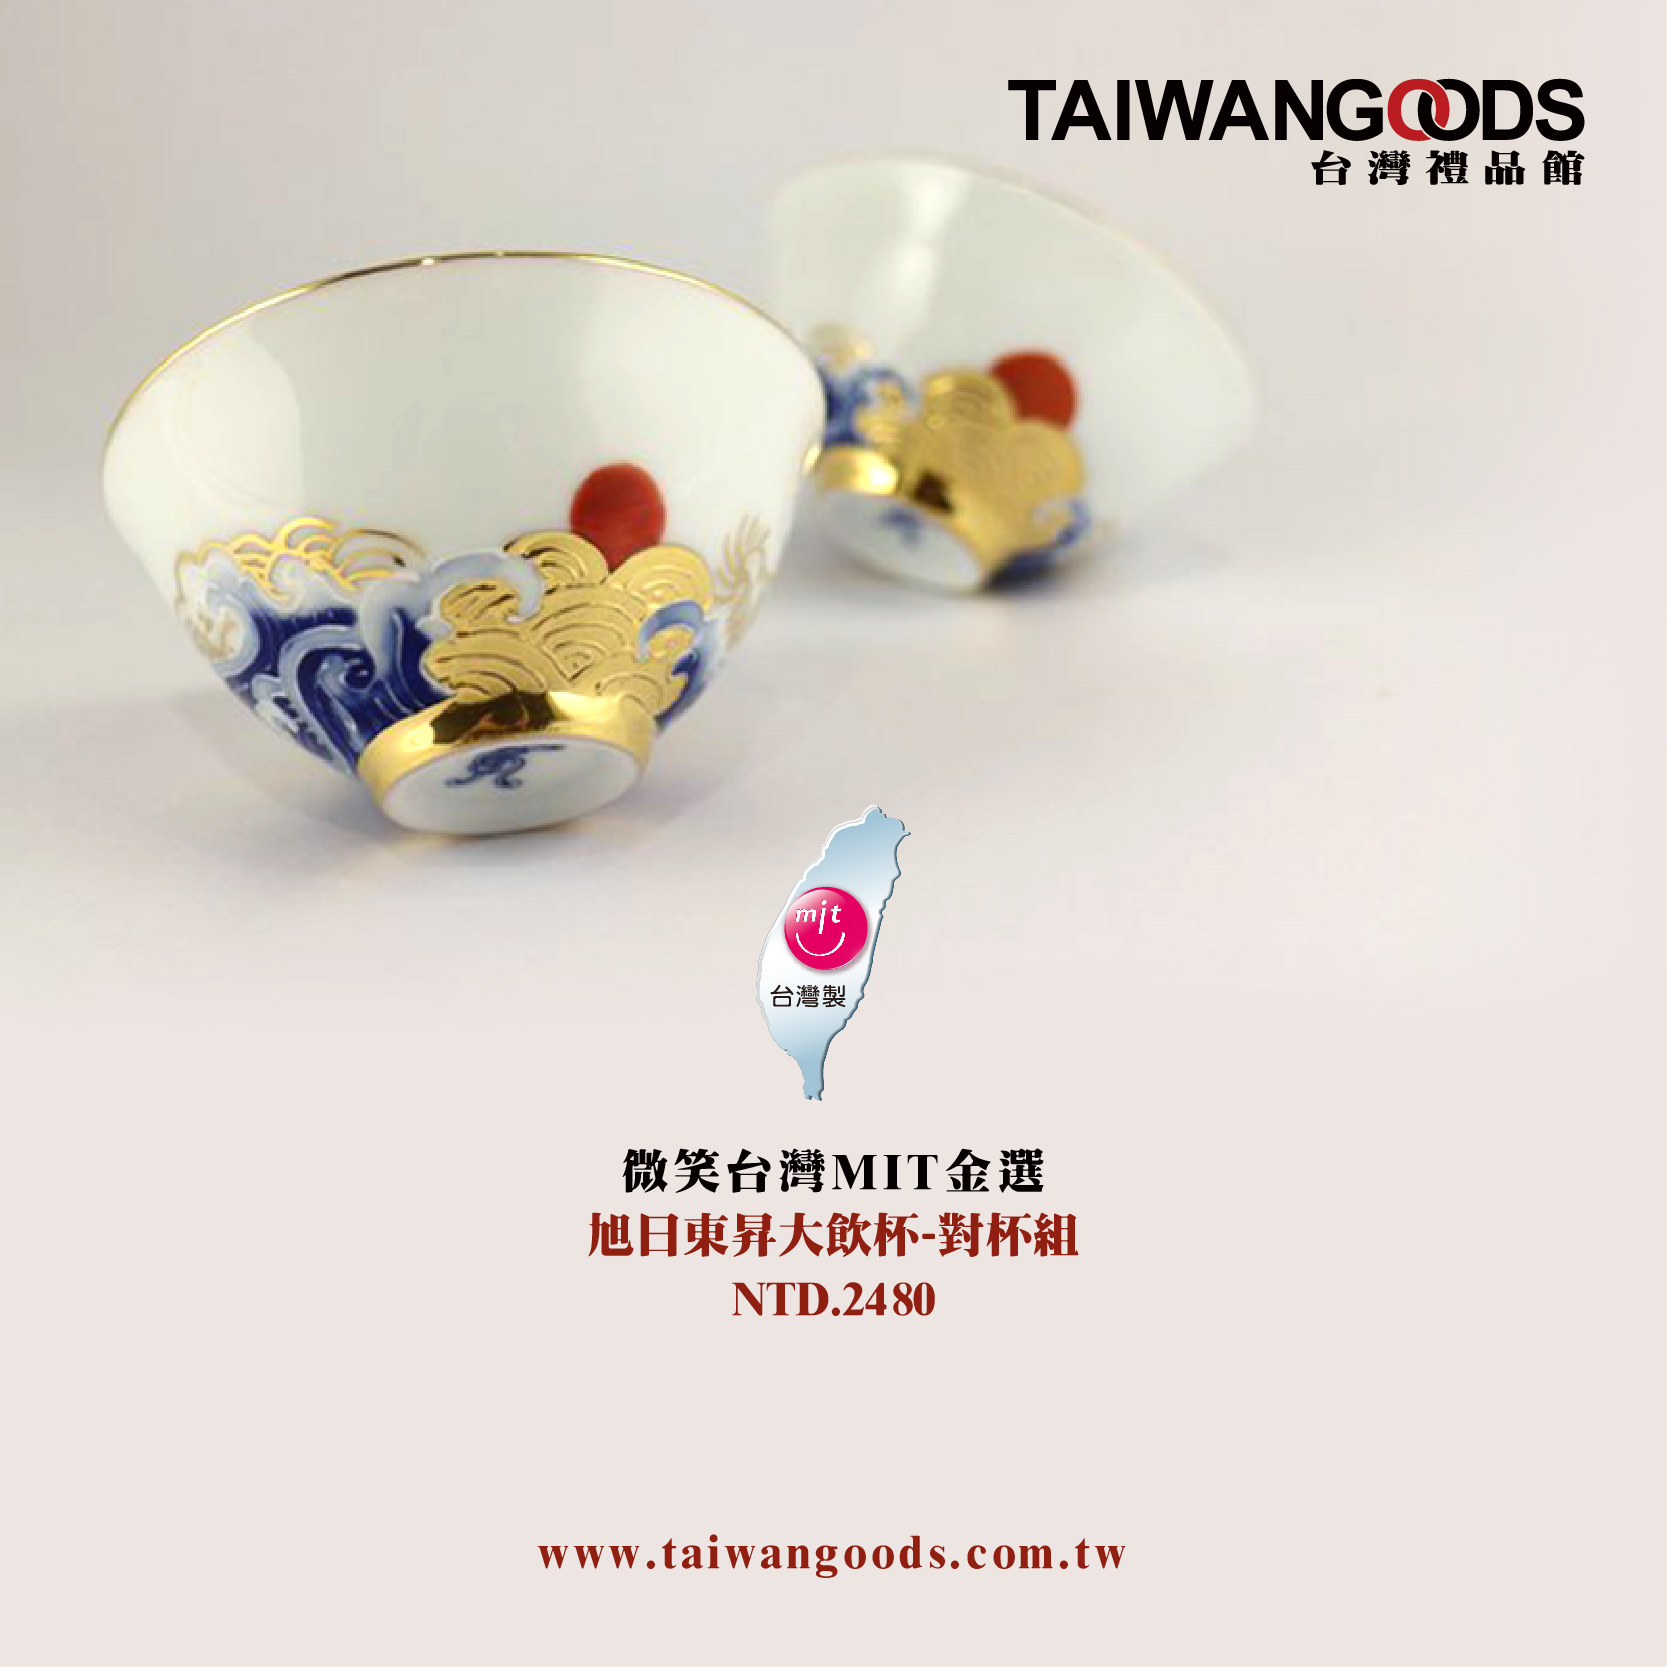 【微笑台灣MIT認證金選】旭日東昇大飲杯-對杯組 Taiwan porcelain craft gilding Art